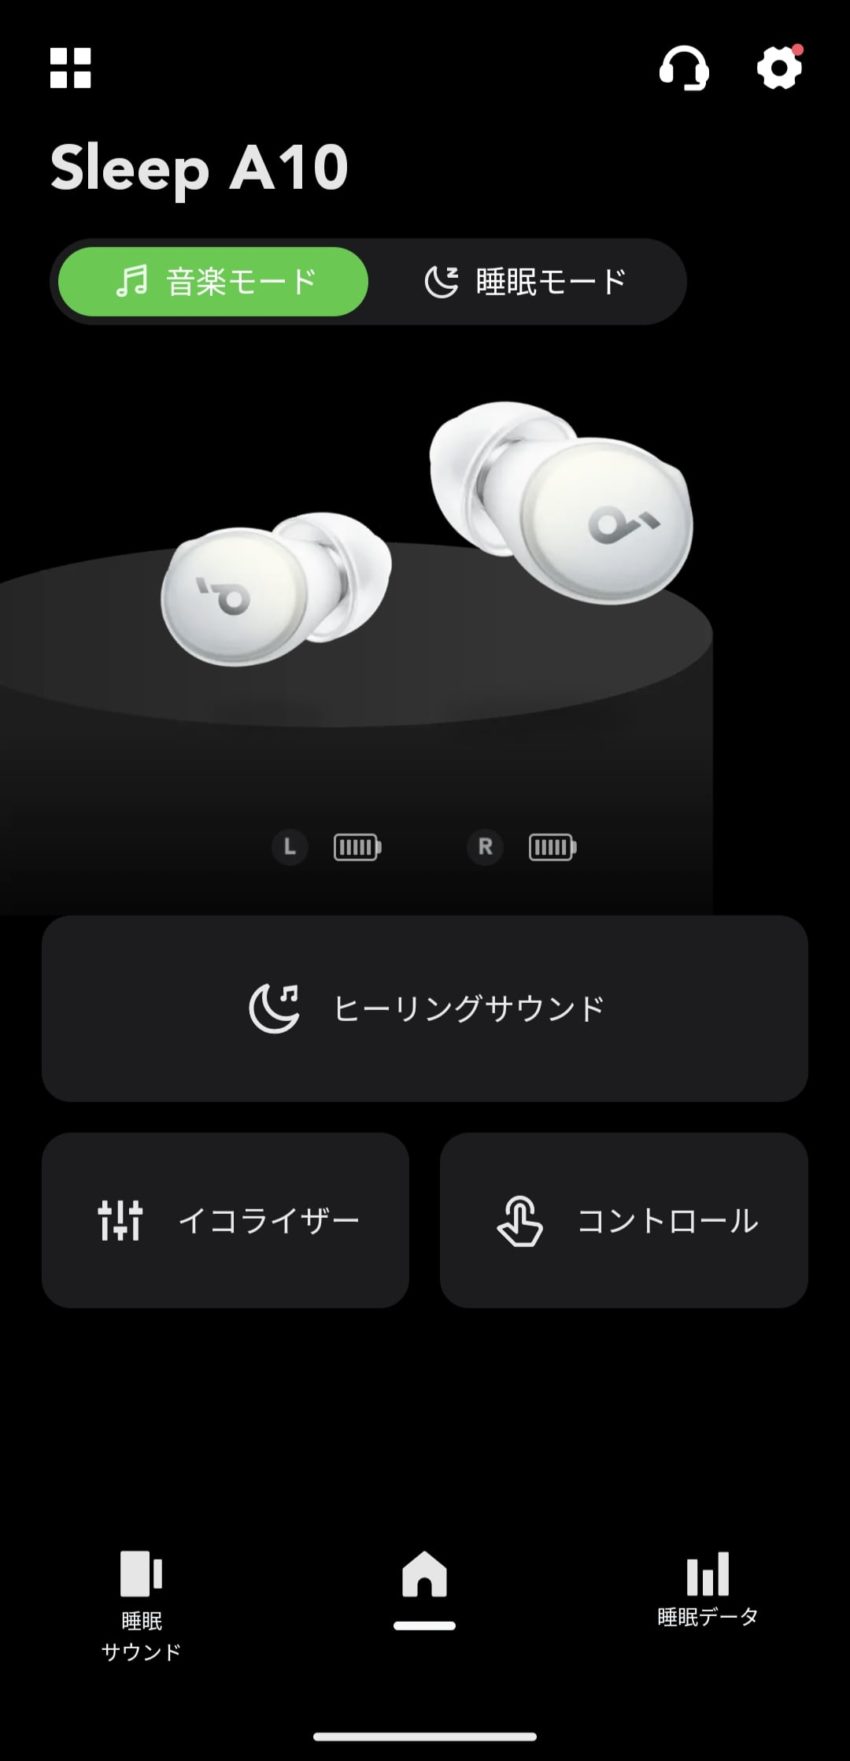 Soundcore Sleep A10 
アプリ